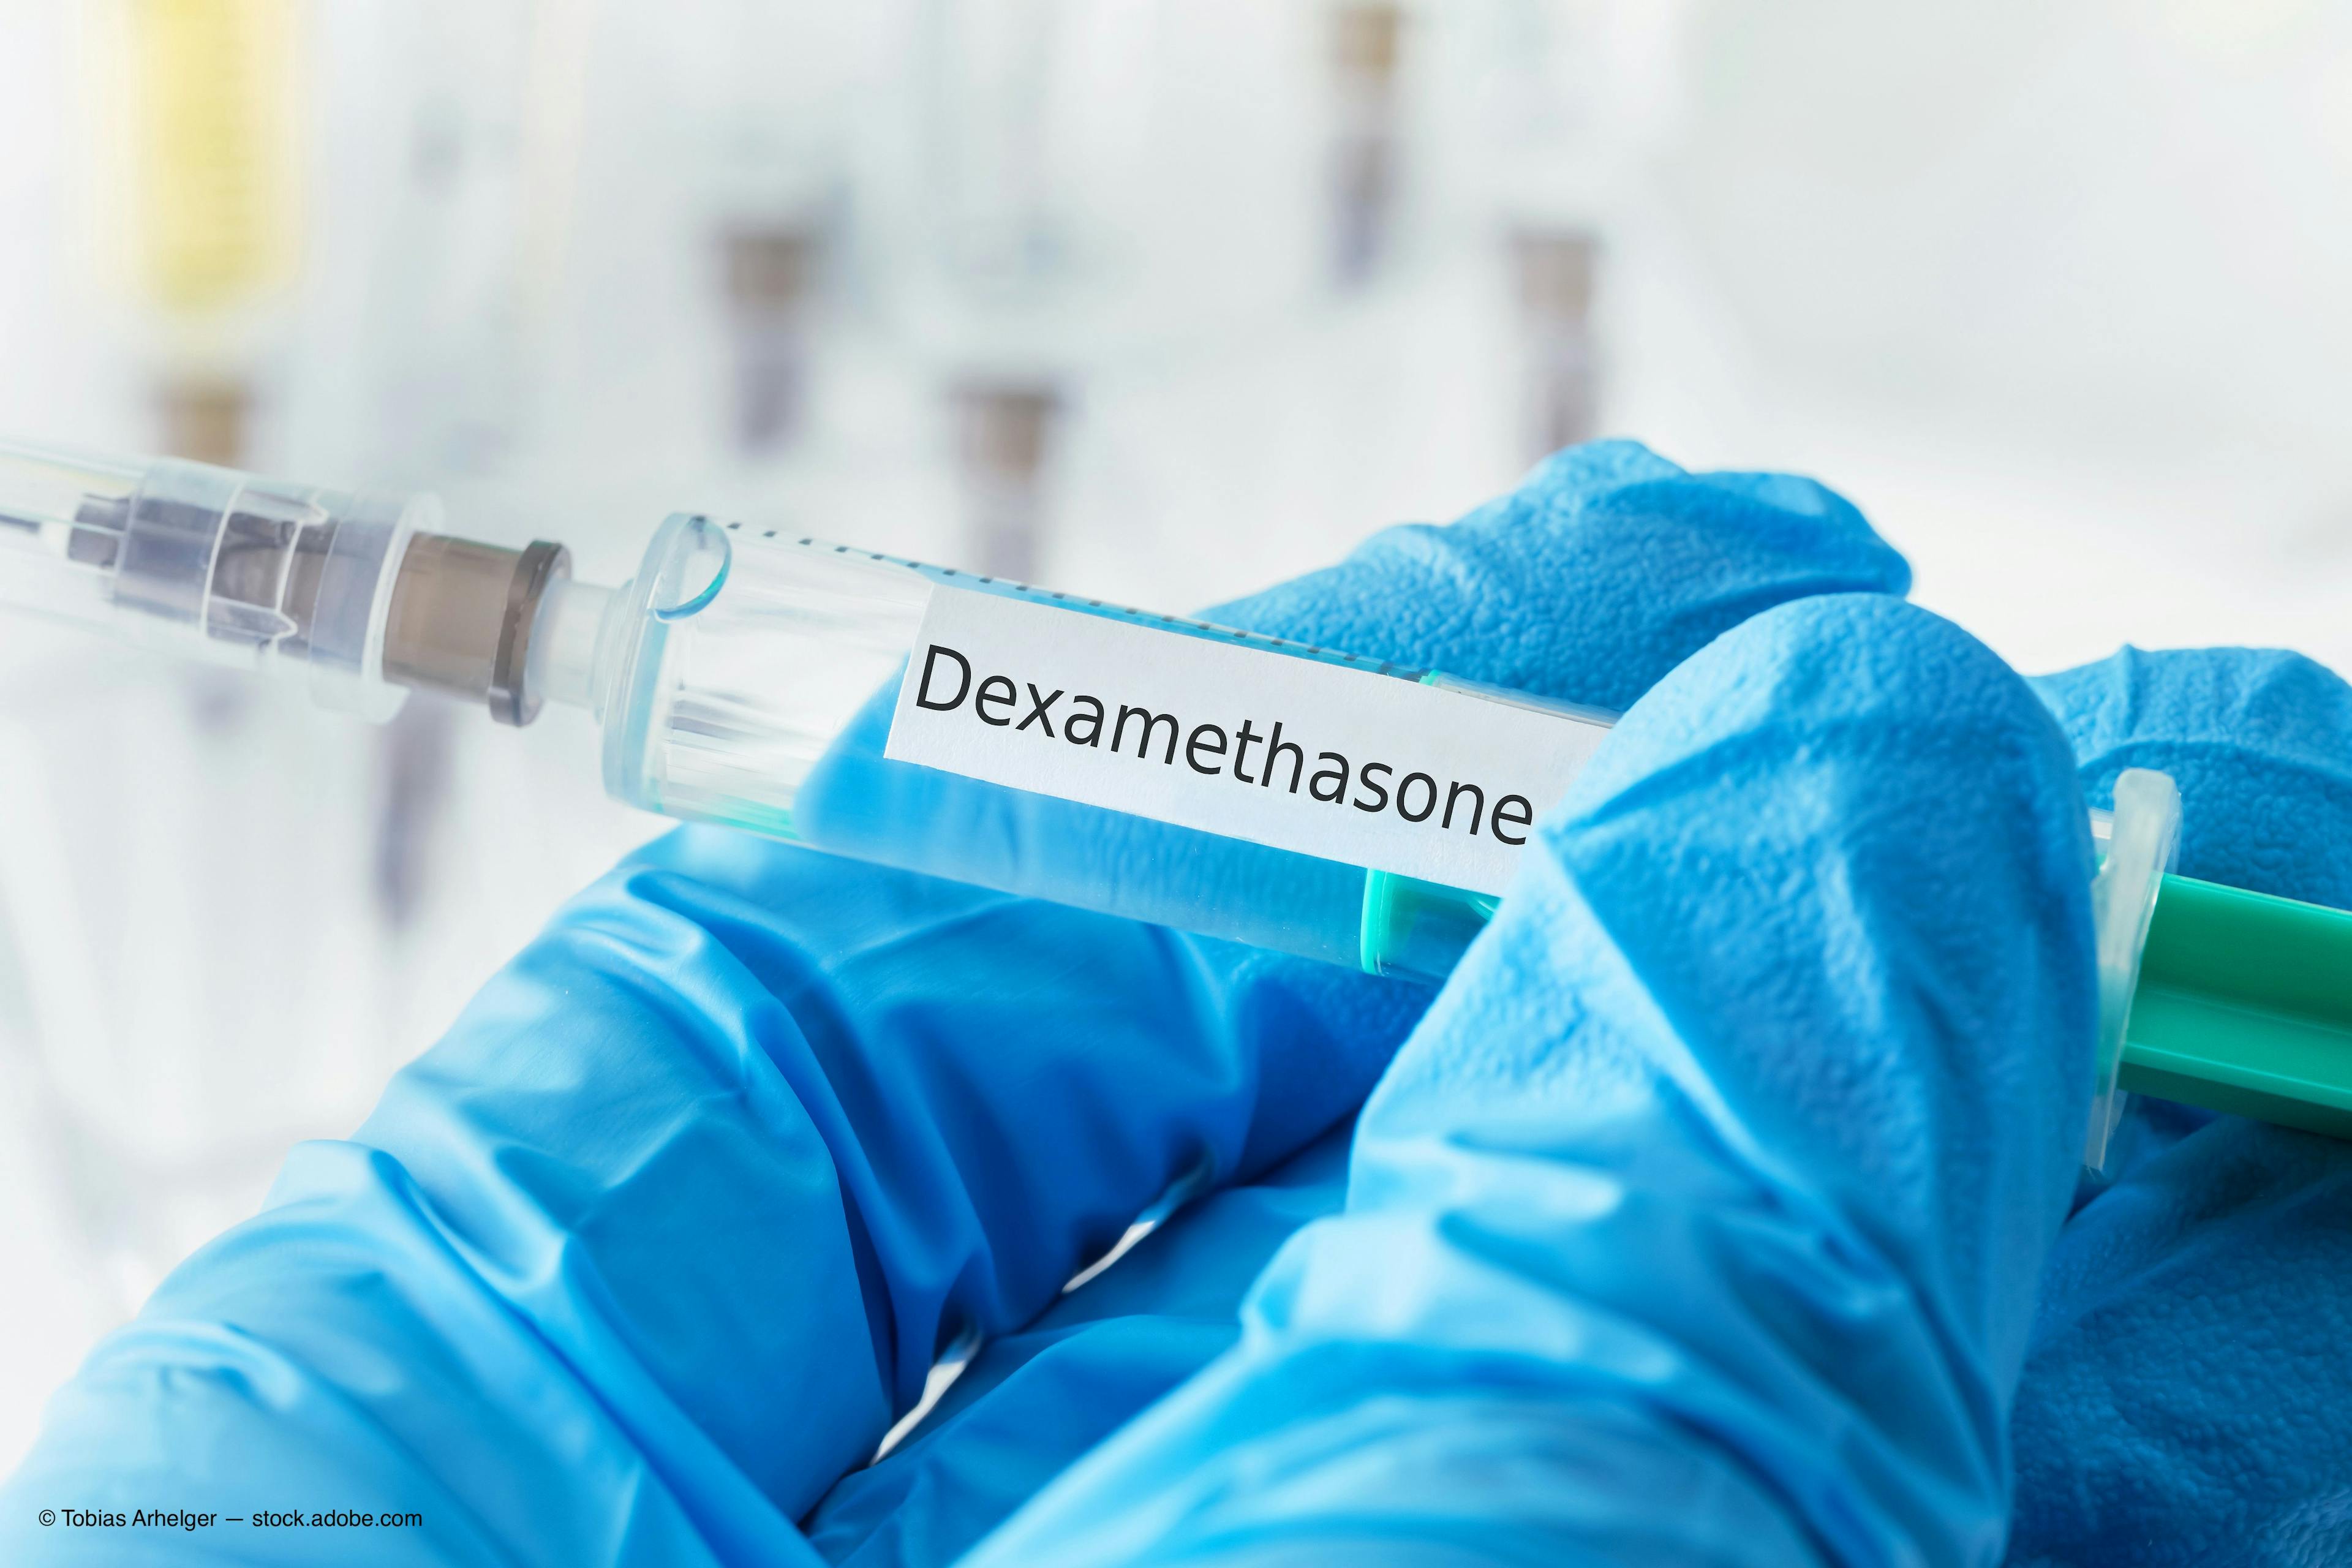 Study: Innovative dexamethasone formulation shows efficacy, safety